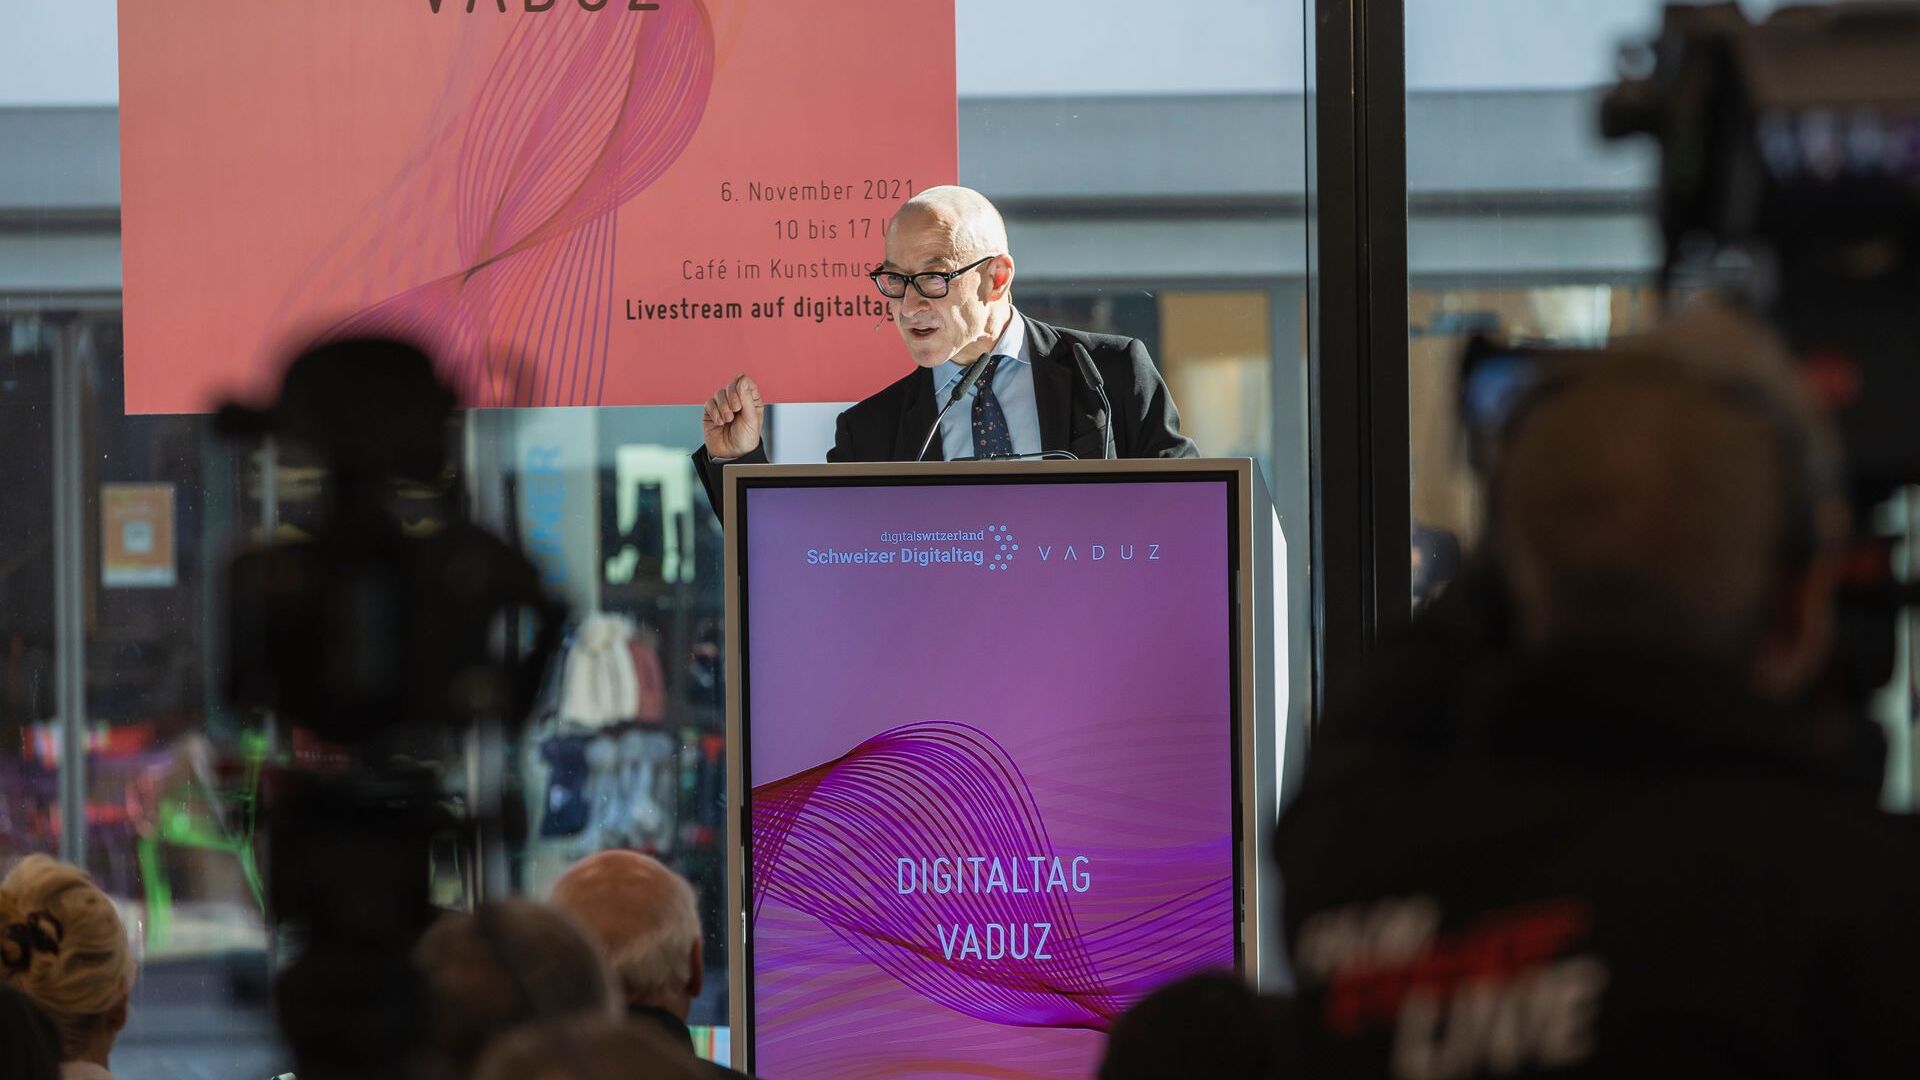 Le "Digitaltag Vaduz", accueilli par le Kunstmuseum de la capitale de la Principauté de Liechtenstein le samedi 6 novembre 2021, a suscité l'enthousiasme du public et des intervenants en analogie avec le "Swiss Digital Day" du lendemain 10 : l'intervention de le futuriste et expert des tendances allemandes David Bosshart